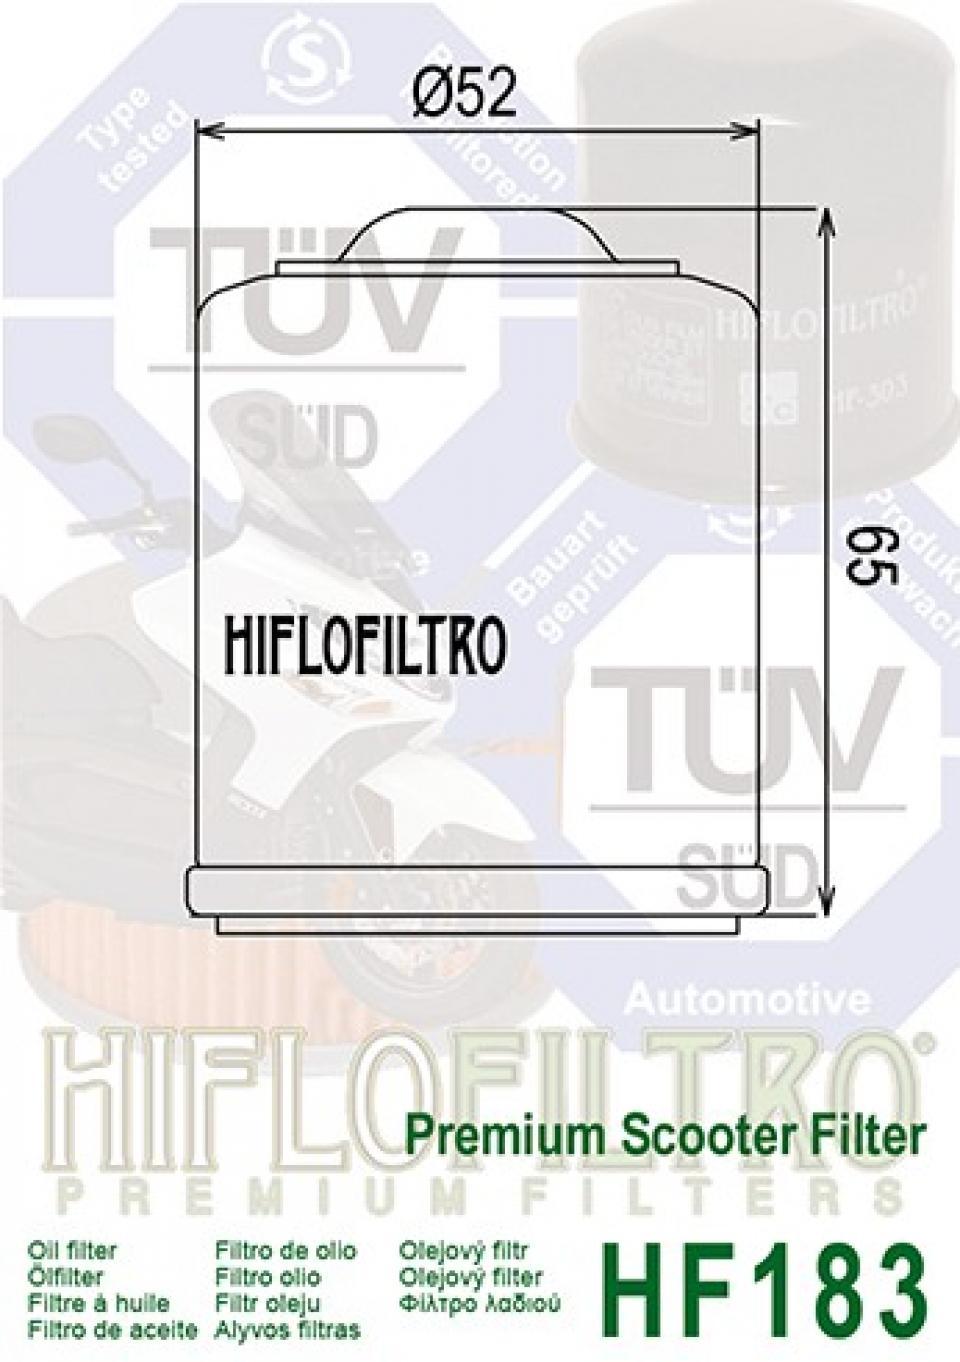 Filtre à huile Hiflofiltro pour Scooter Piaggio 180 Super Lx Gtx - Grimeca 2000 à 2003 Neuf